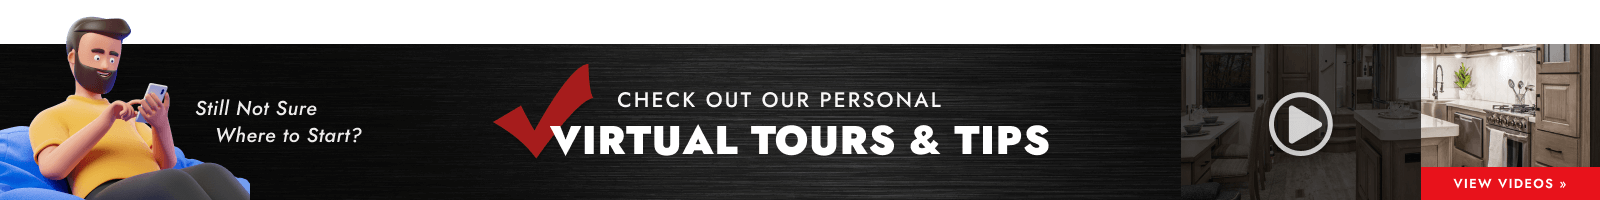 Virtual Tours & Tips